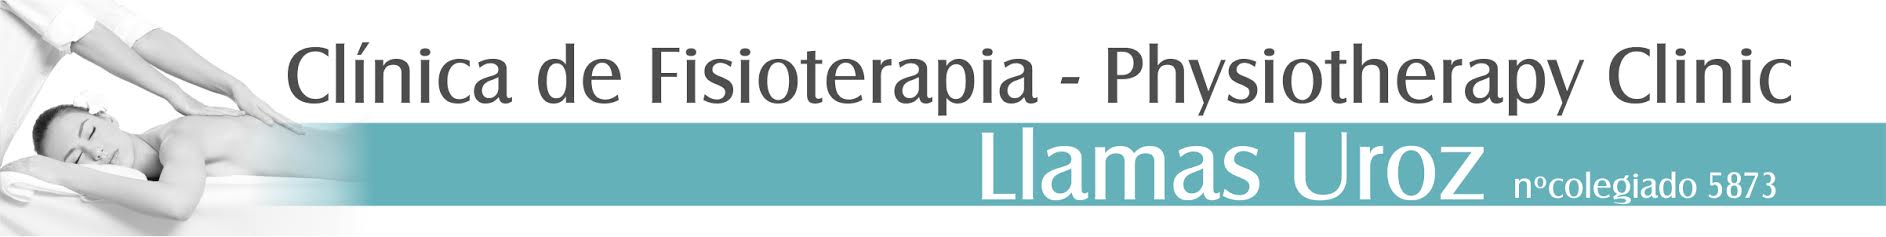 Logotipo de la clínica CLINICA FISIOTERAPIA LLAMAS UROZ